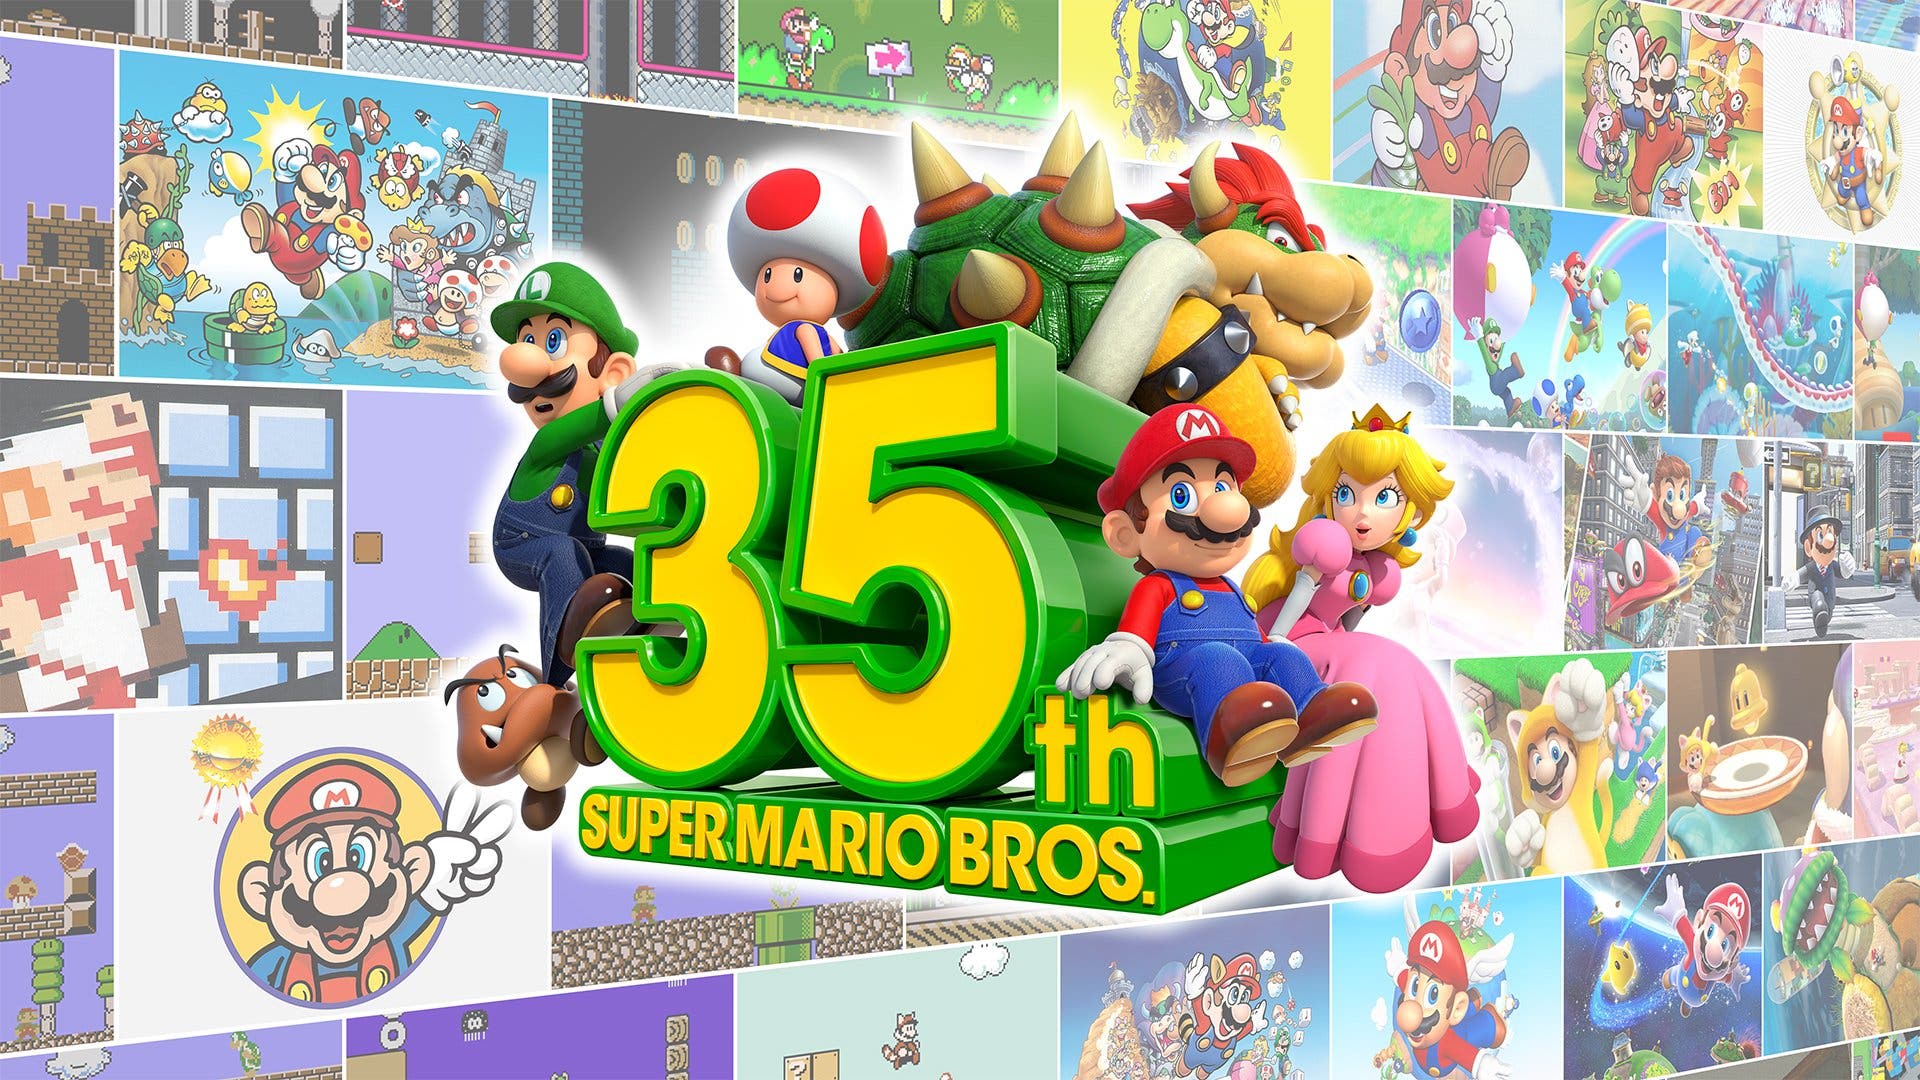 Indicios apuntan a que originalmente Nintendo iba a celebrar el 35º aniversario de Super Mario Bros. en abril